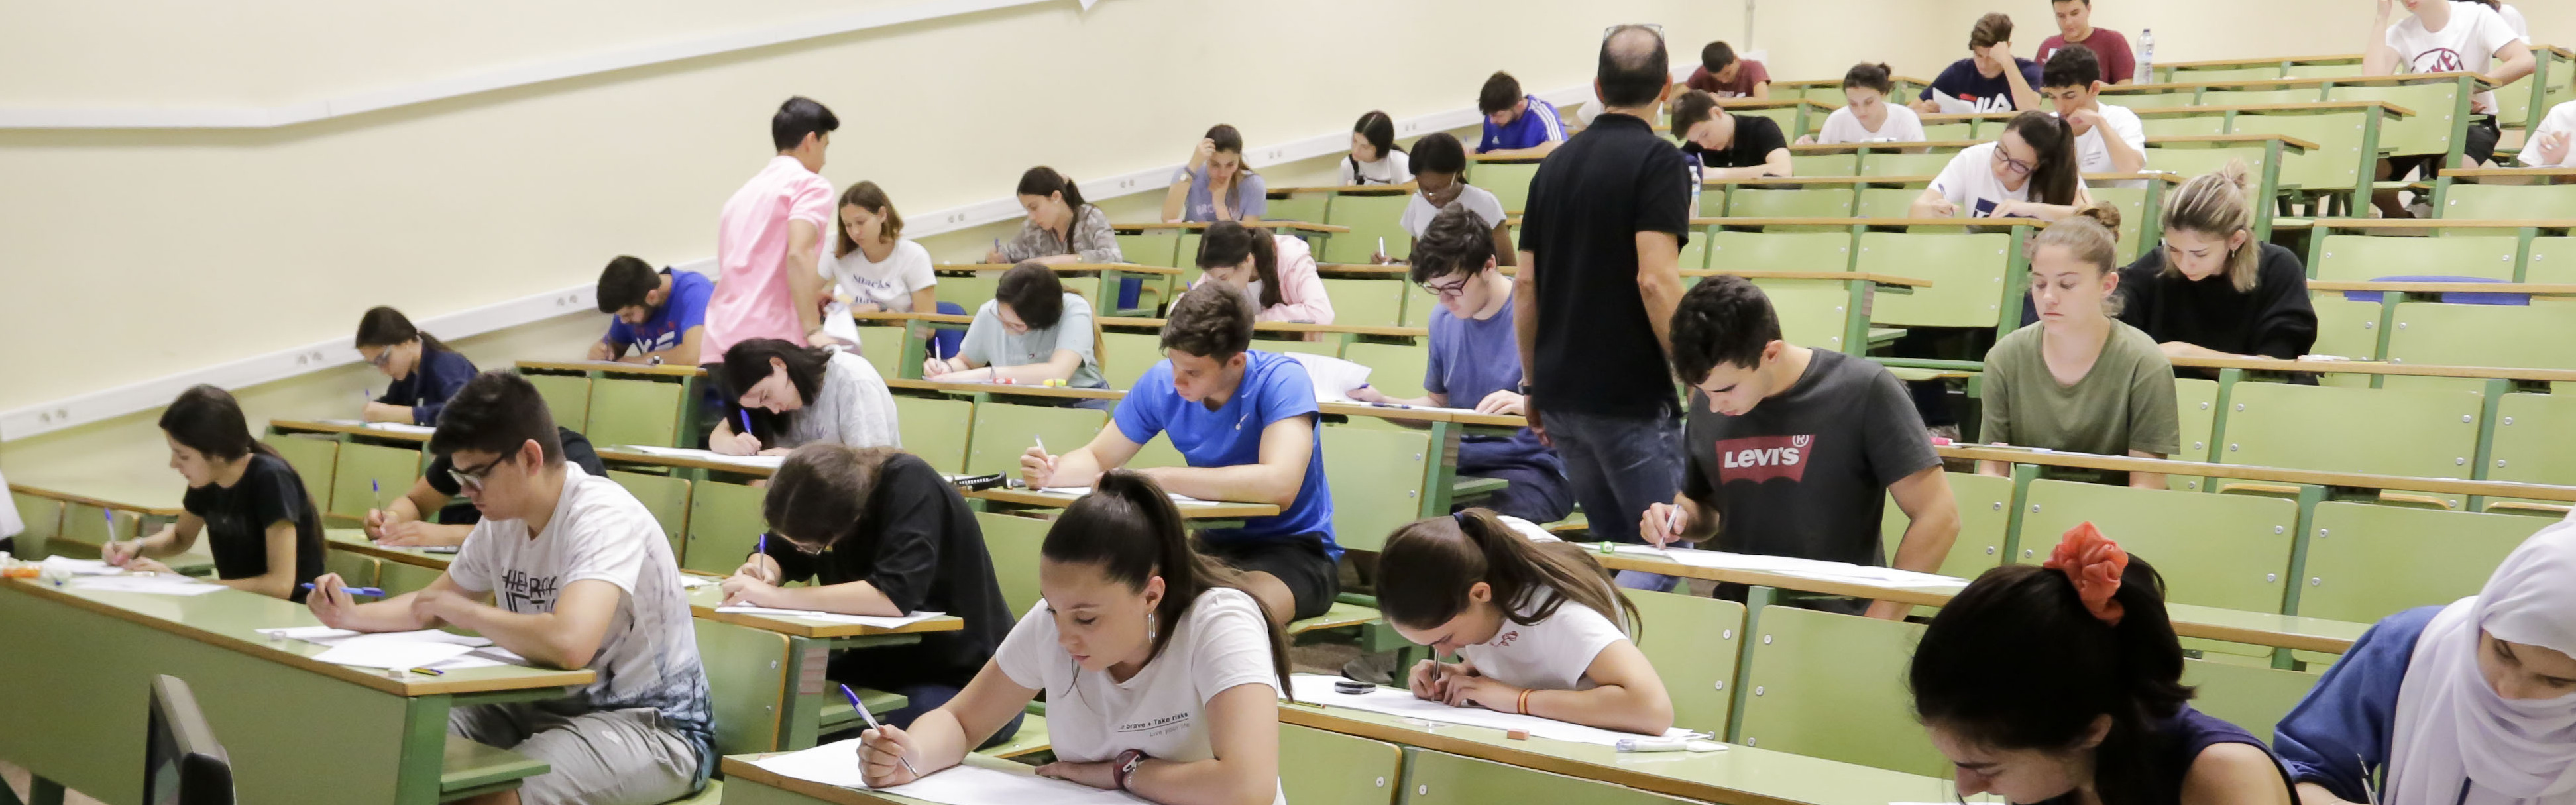 Nota de prensa - El 94,7 por ciento del alumnado aprueba la EBAU en la Región de Murcia